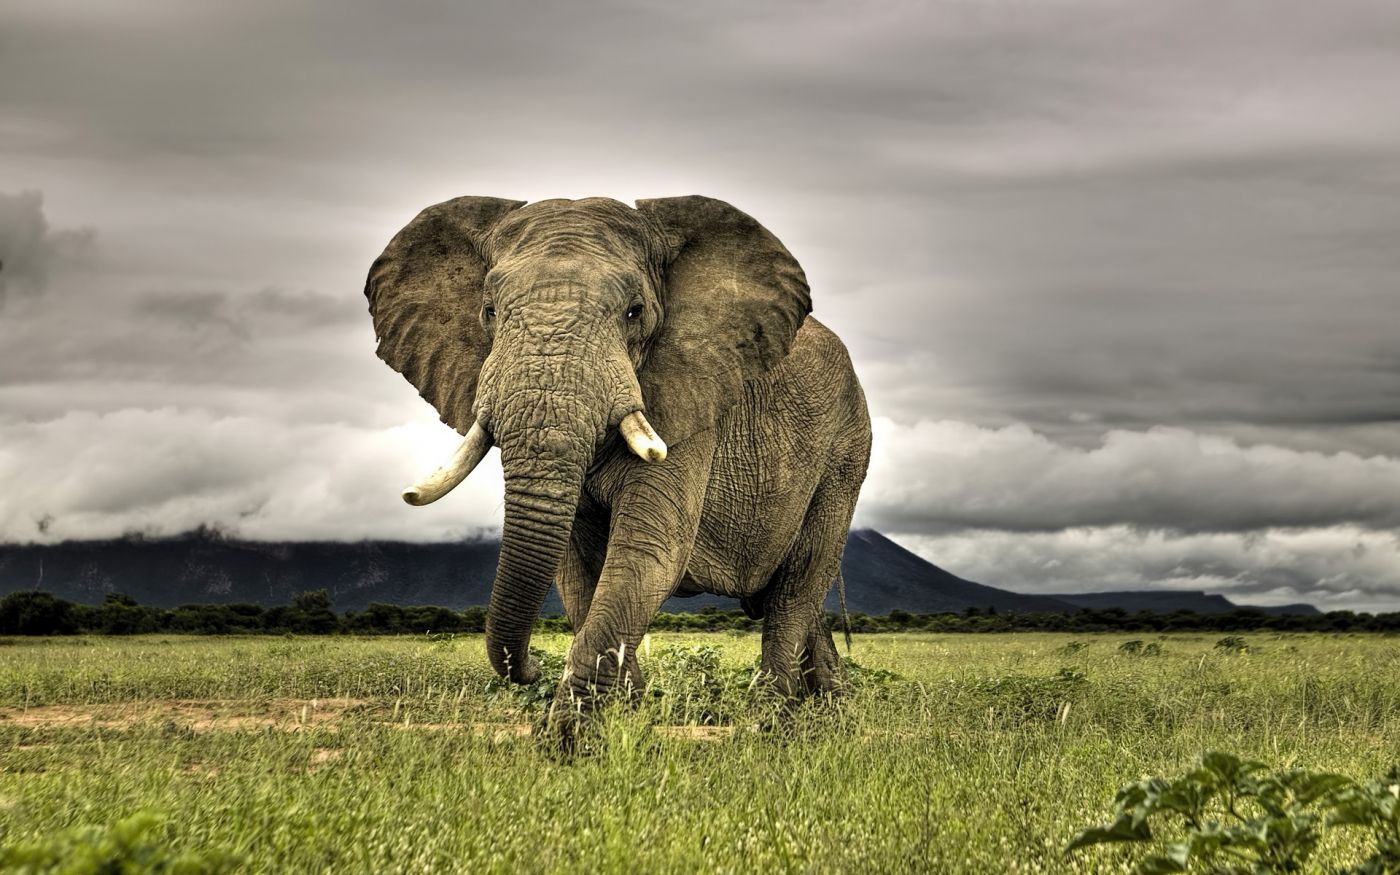 艺术摄影 图片信息简介:走在南非马拉克勒稀树国家公园的非洲象